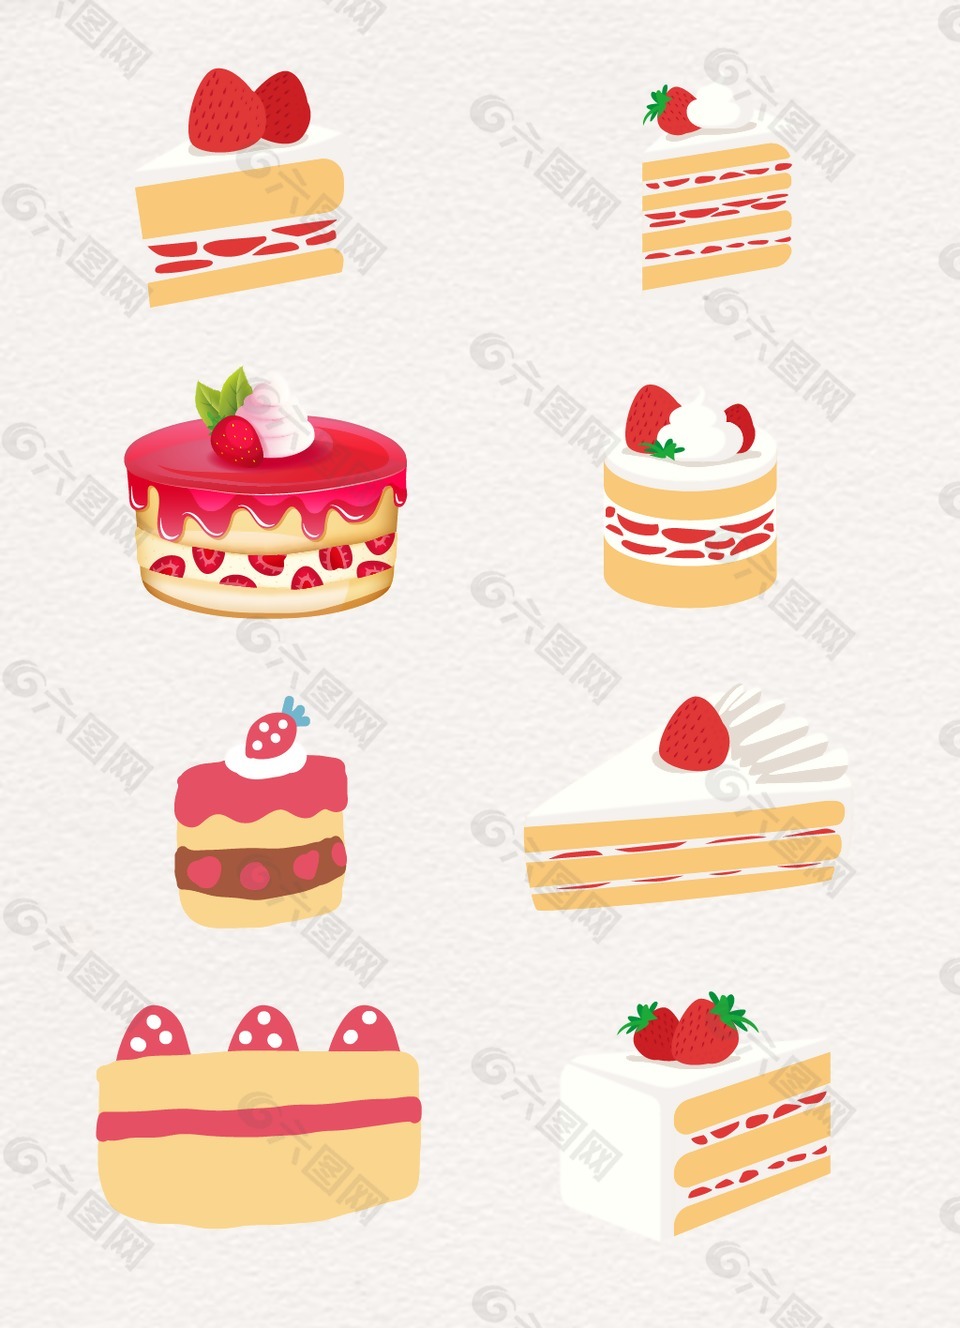 草莓水果蛋糕设计